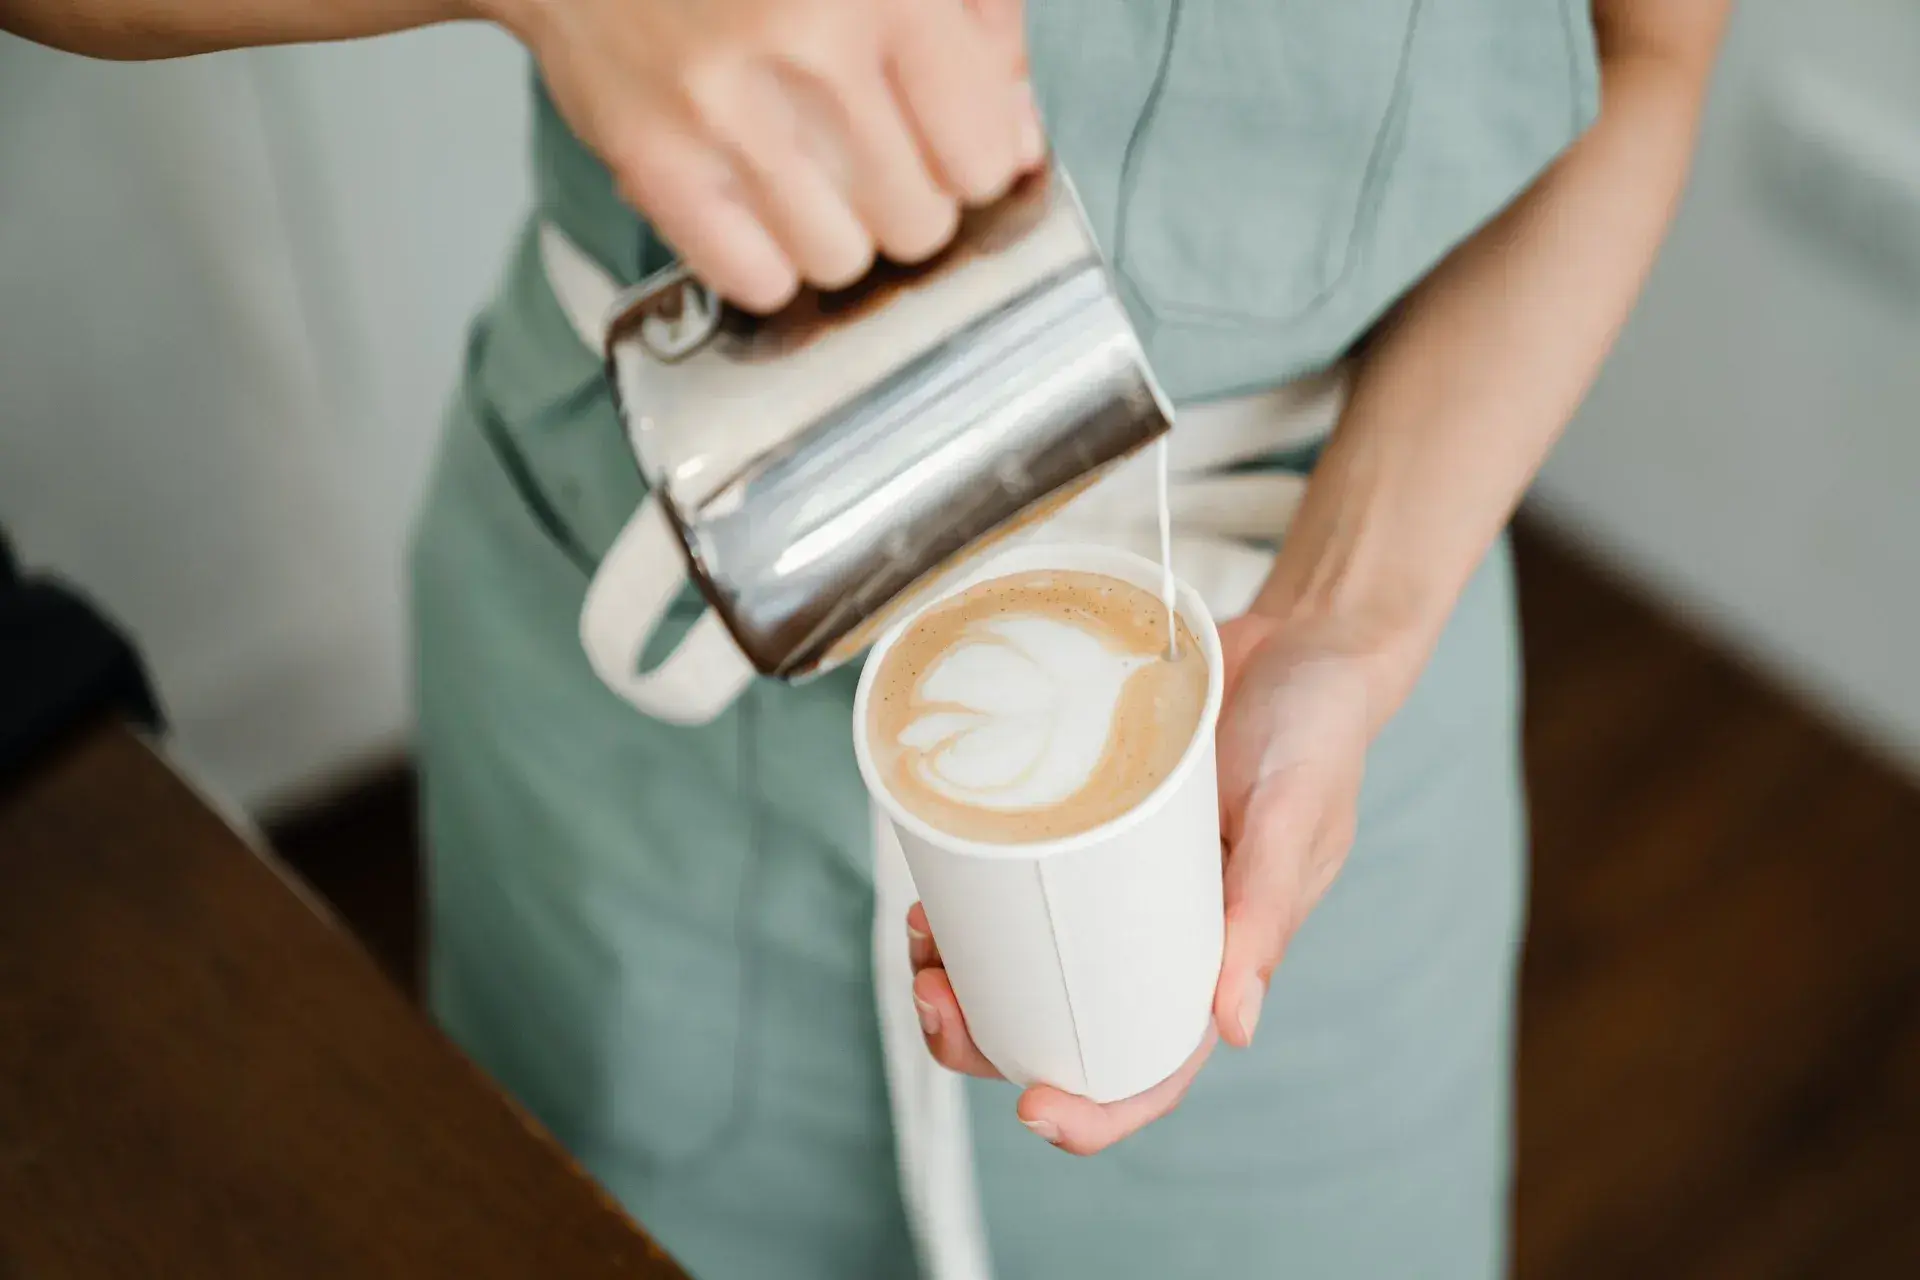 Может ли кофемашина приготовить кофе, как бариста в кафе?, Фото 3150